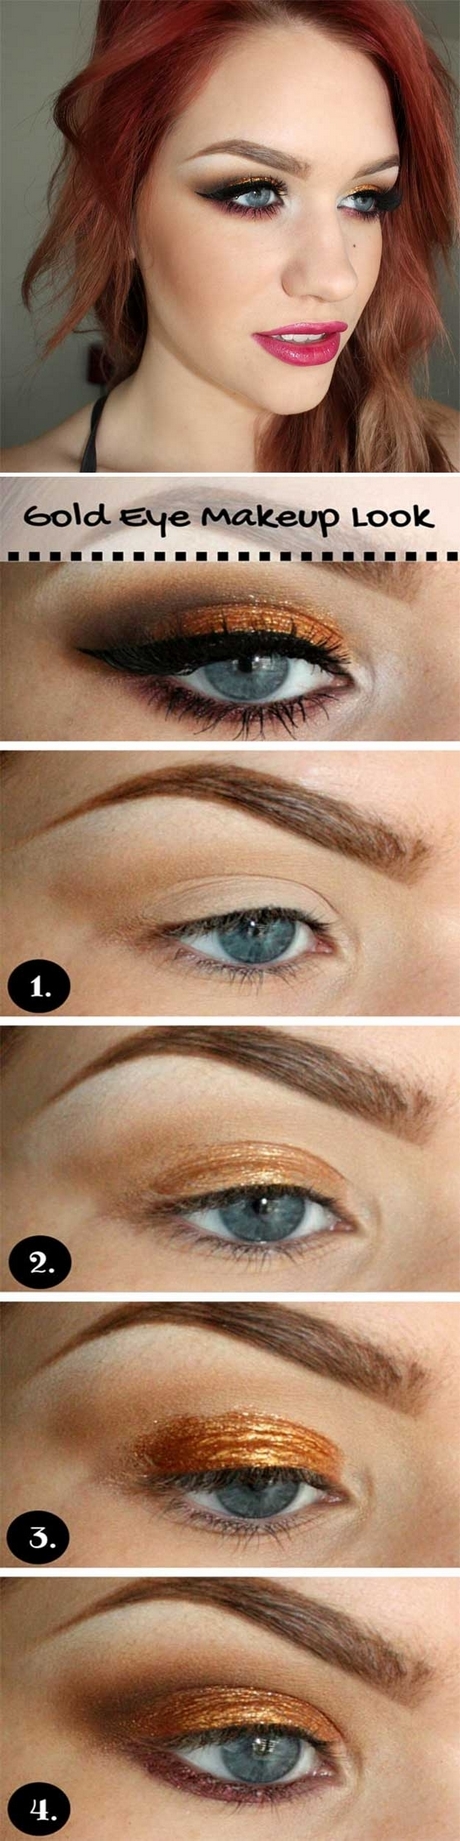 eye-makeup-tutorial-for-blue-eyes-90_15 Oogmakeup les voor blauwe ogen